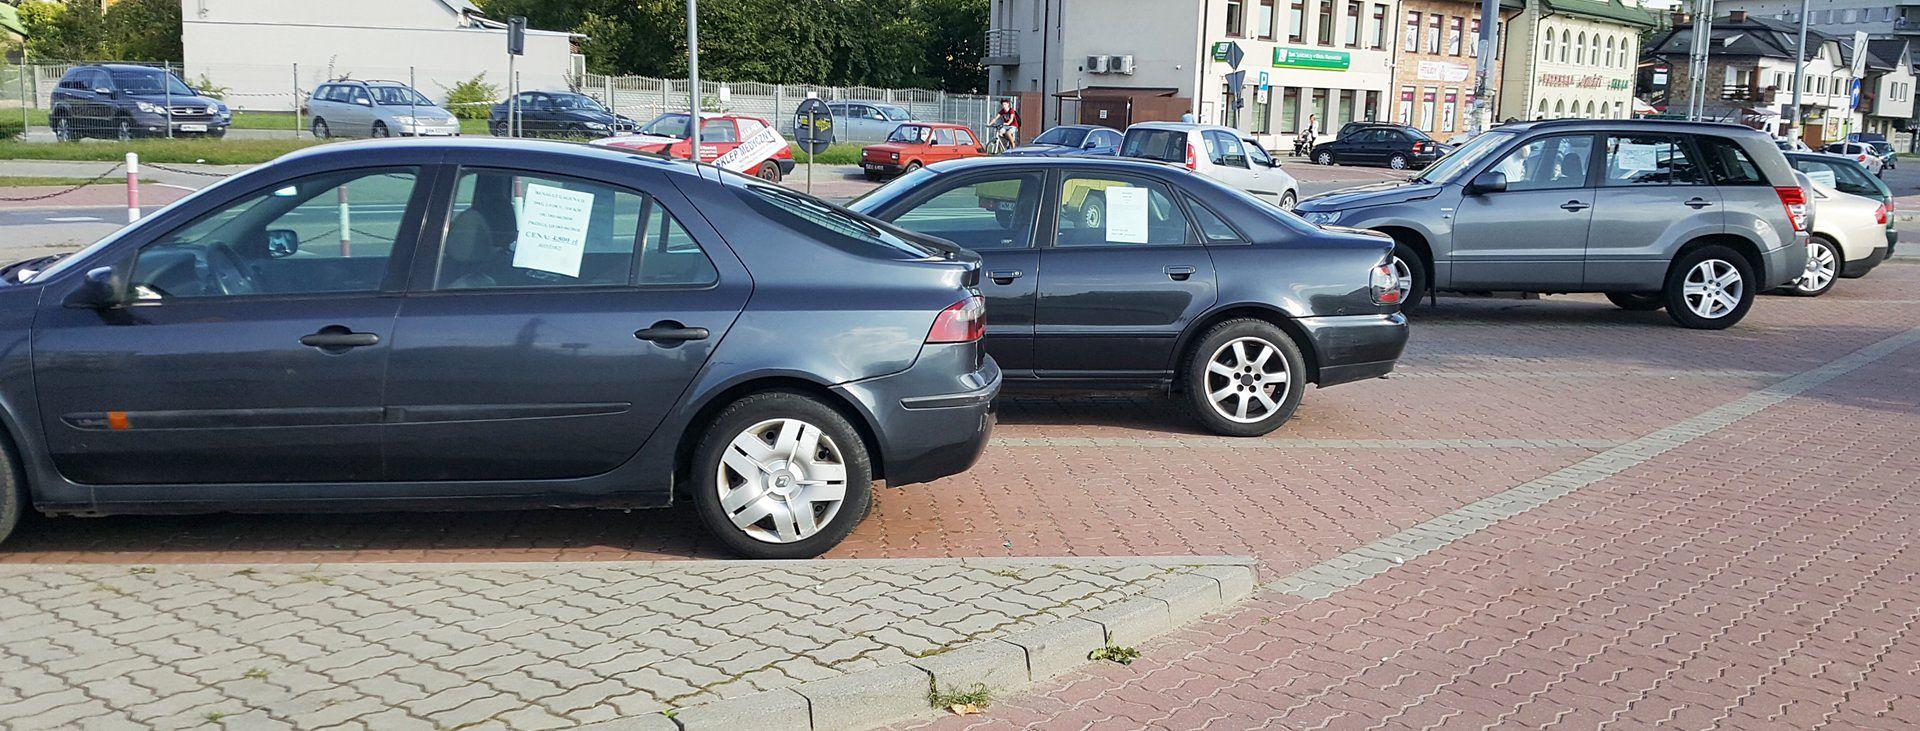 Co Musi, A Co Może Zawierać Umowa Sprzedaży Samochodu? Informacje Niezbędne I Przydatne. Poradnik • Autocentrum.pl